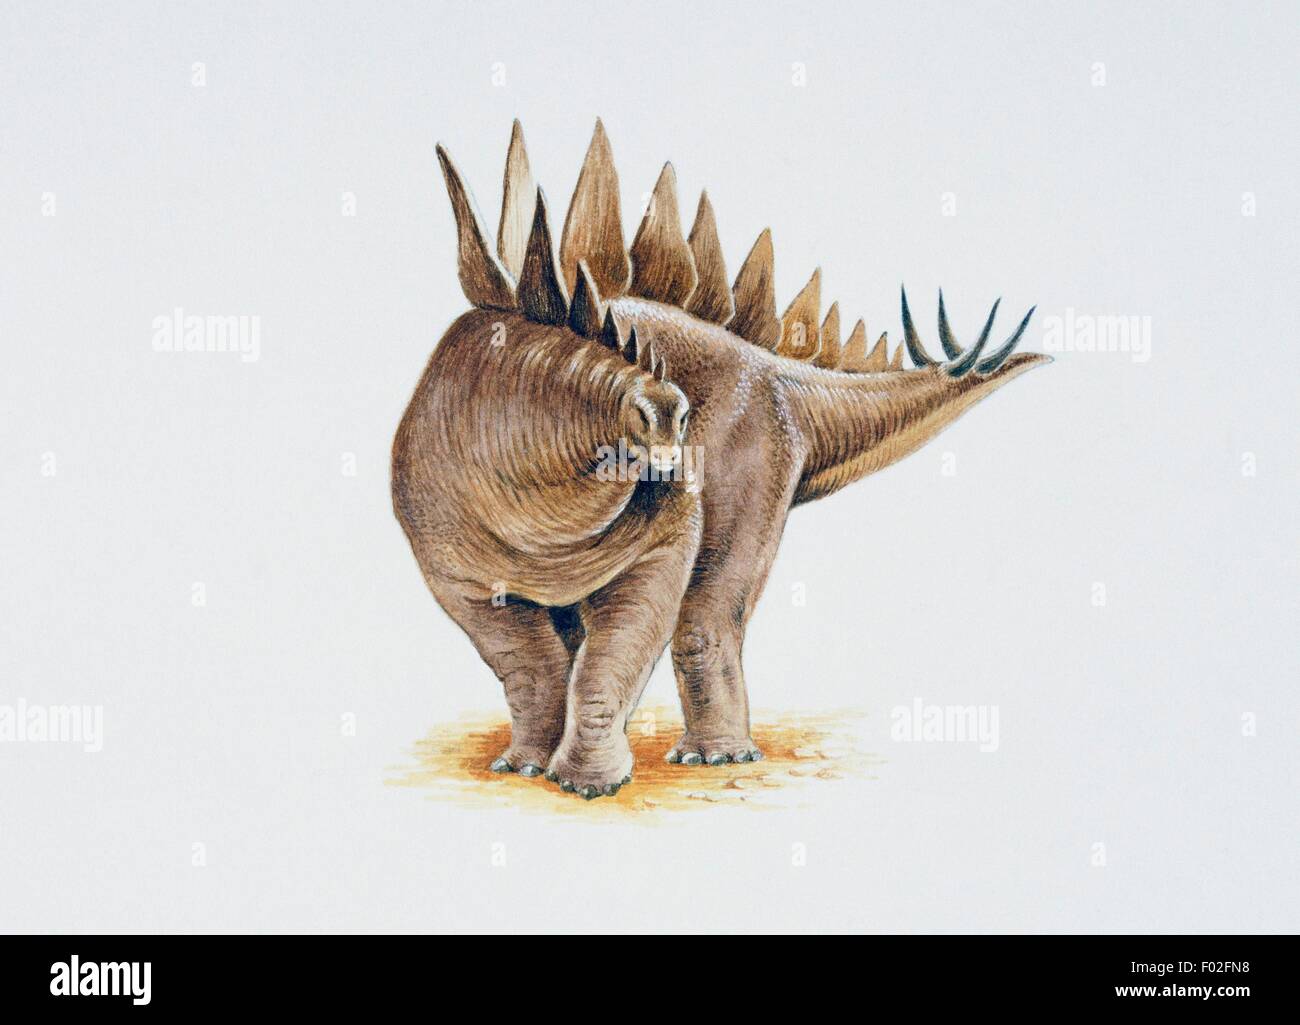 Le Stegosaurus avec une seule rangée de plaques se chevauchent légèrement. Illustration de Nick Le brochet. Banque D'Images